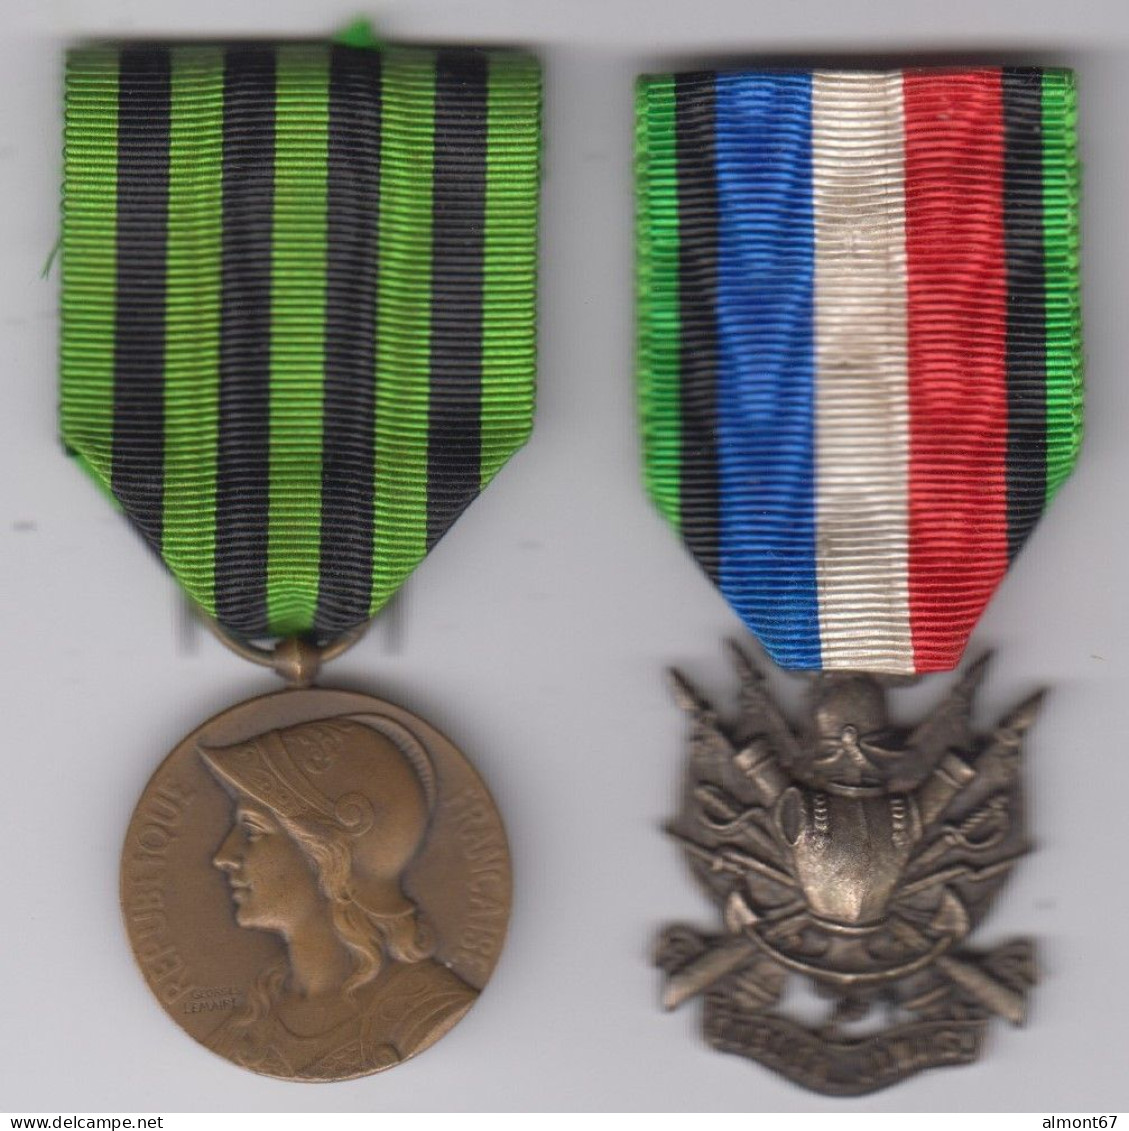 2 Médailles Guerre 1870 - 1871 - Before 1871